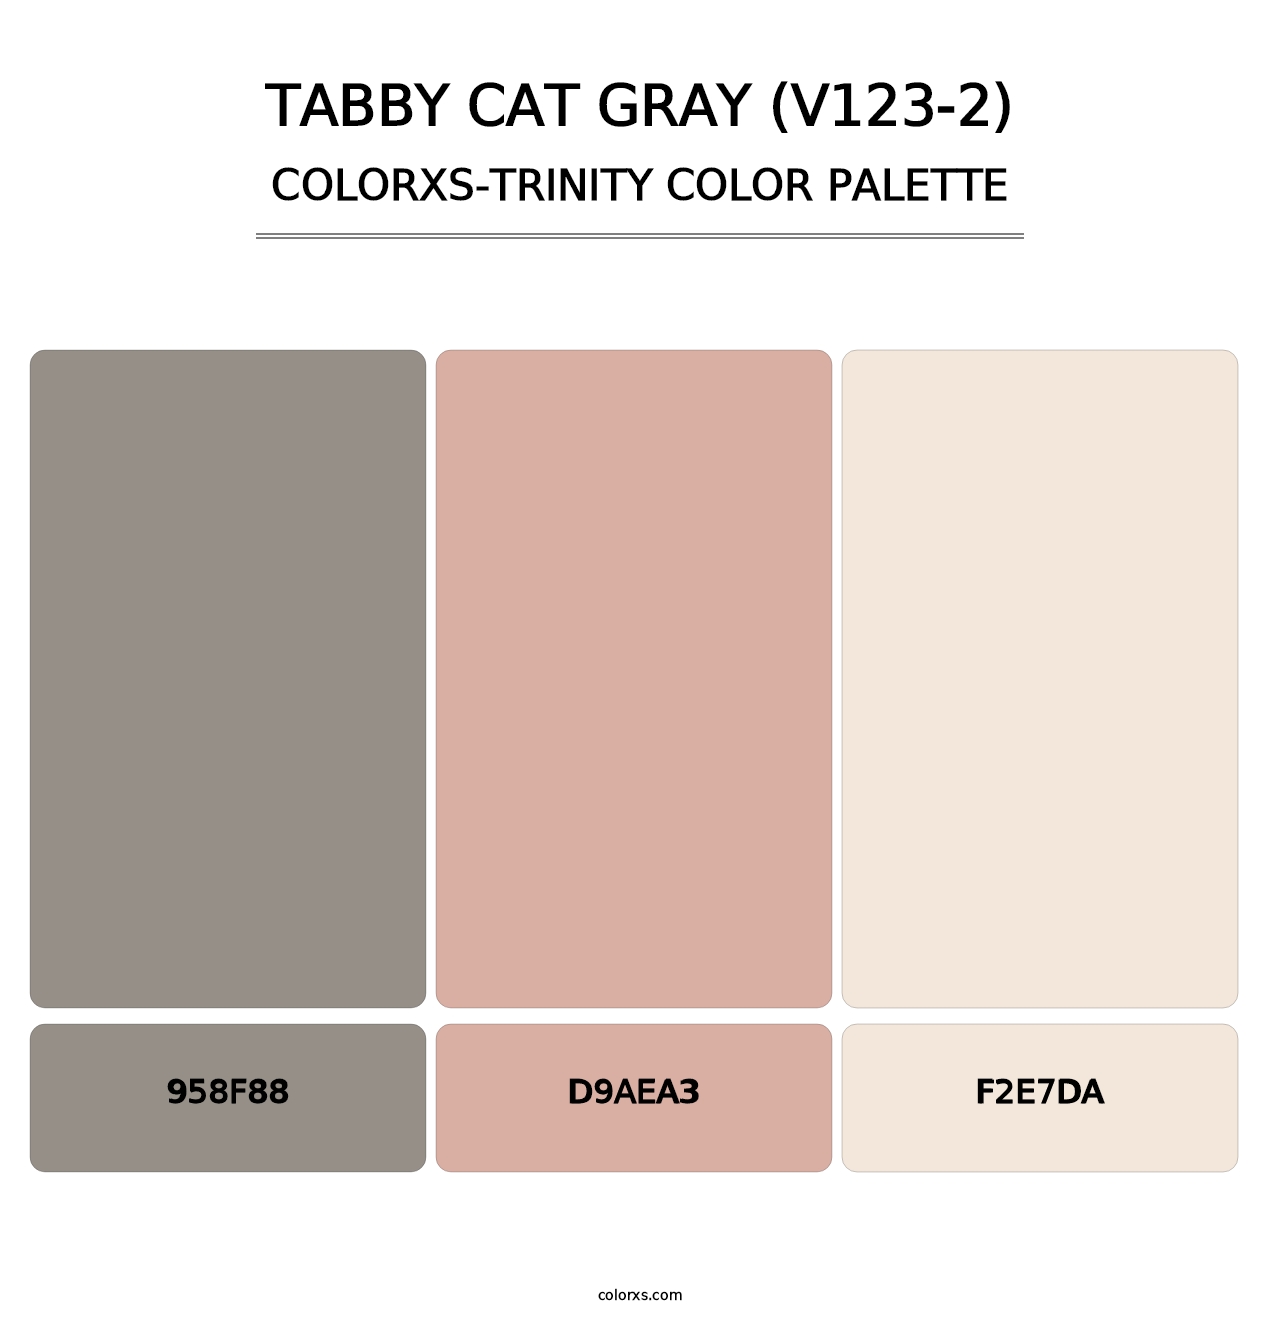 Tabby Cat Gray (V123-2) - Colorxs Trinity Palette